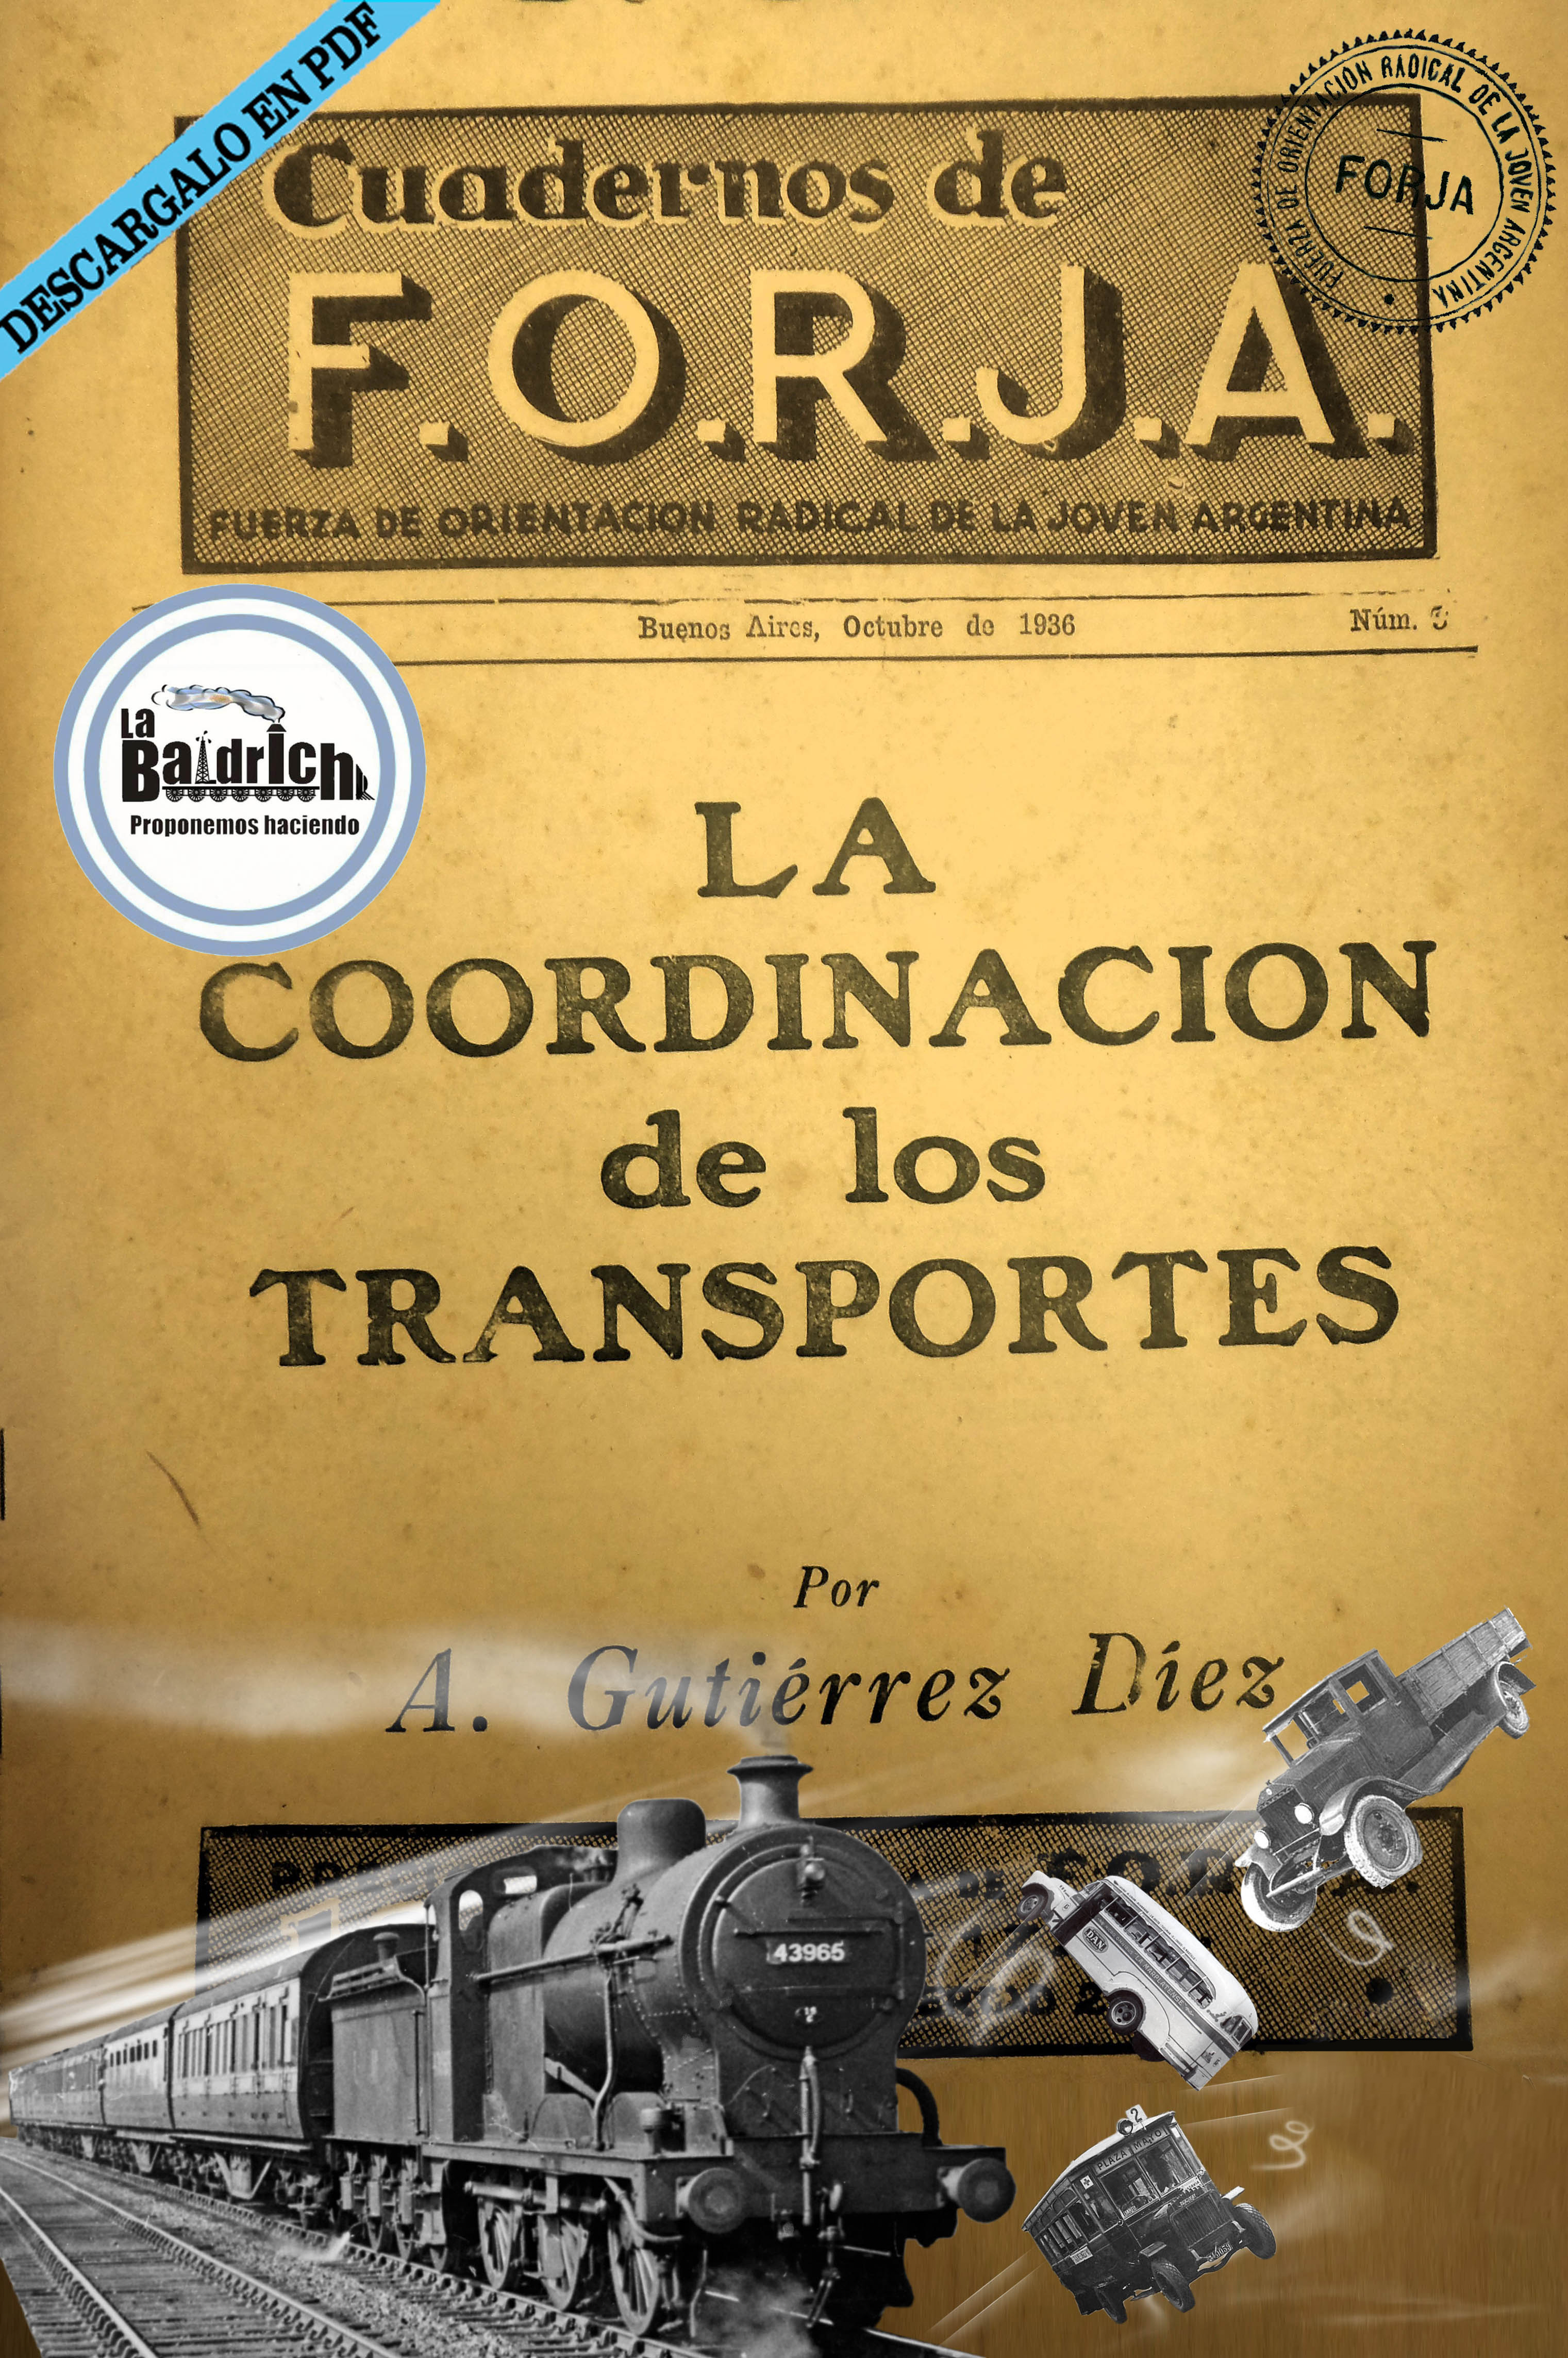 forja cuadernos La coordinación de los transportes ferroviario monopolio inglés gutierrez diez 1936 decada infame